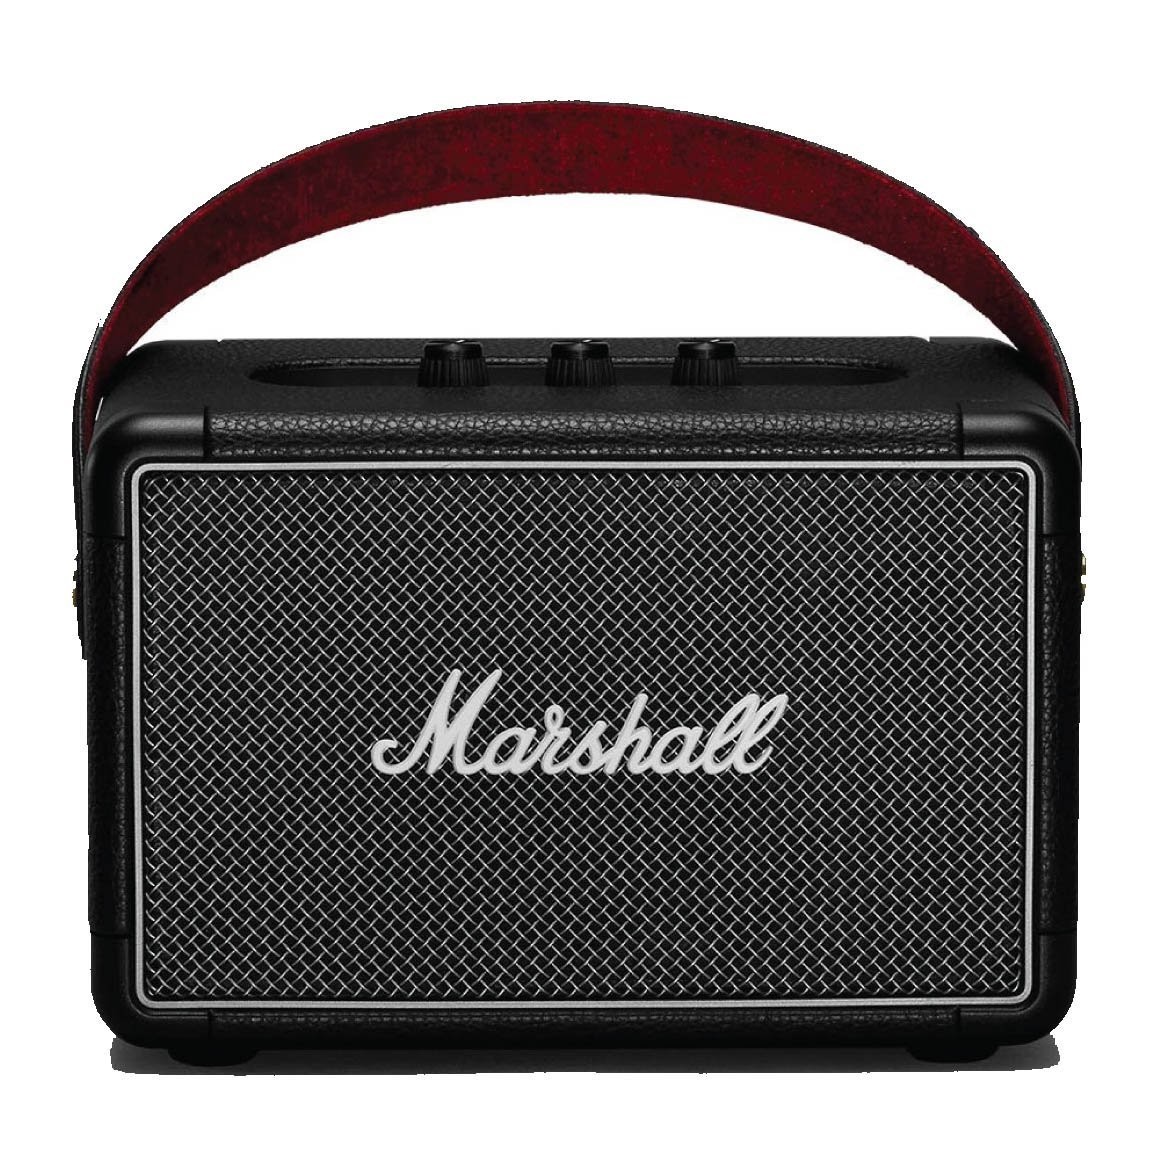 Marshall Kilburn 2 Portable Bluetooth Speaker